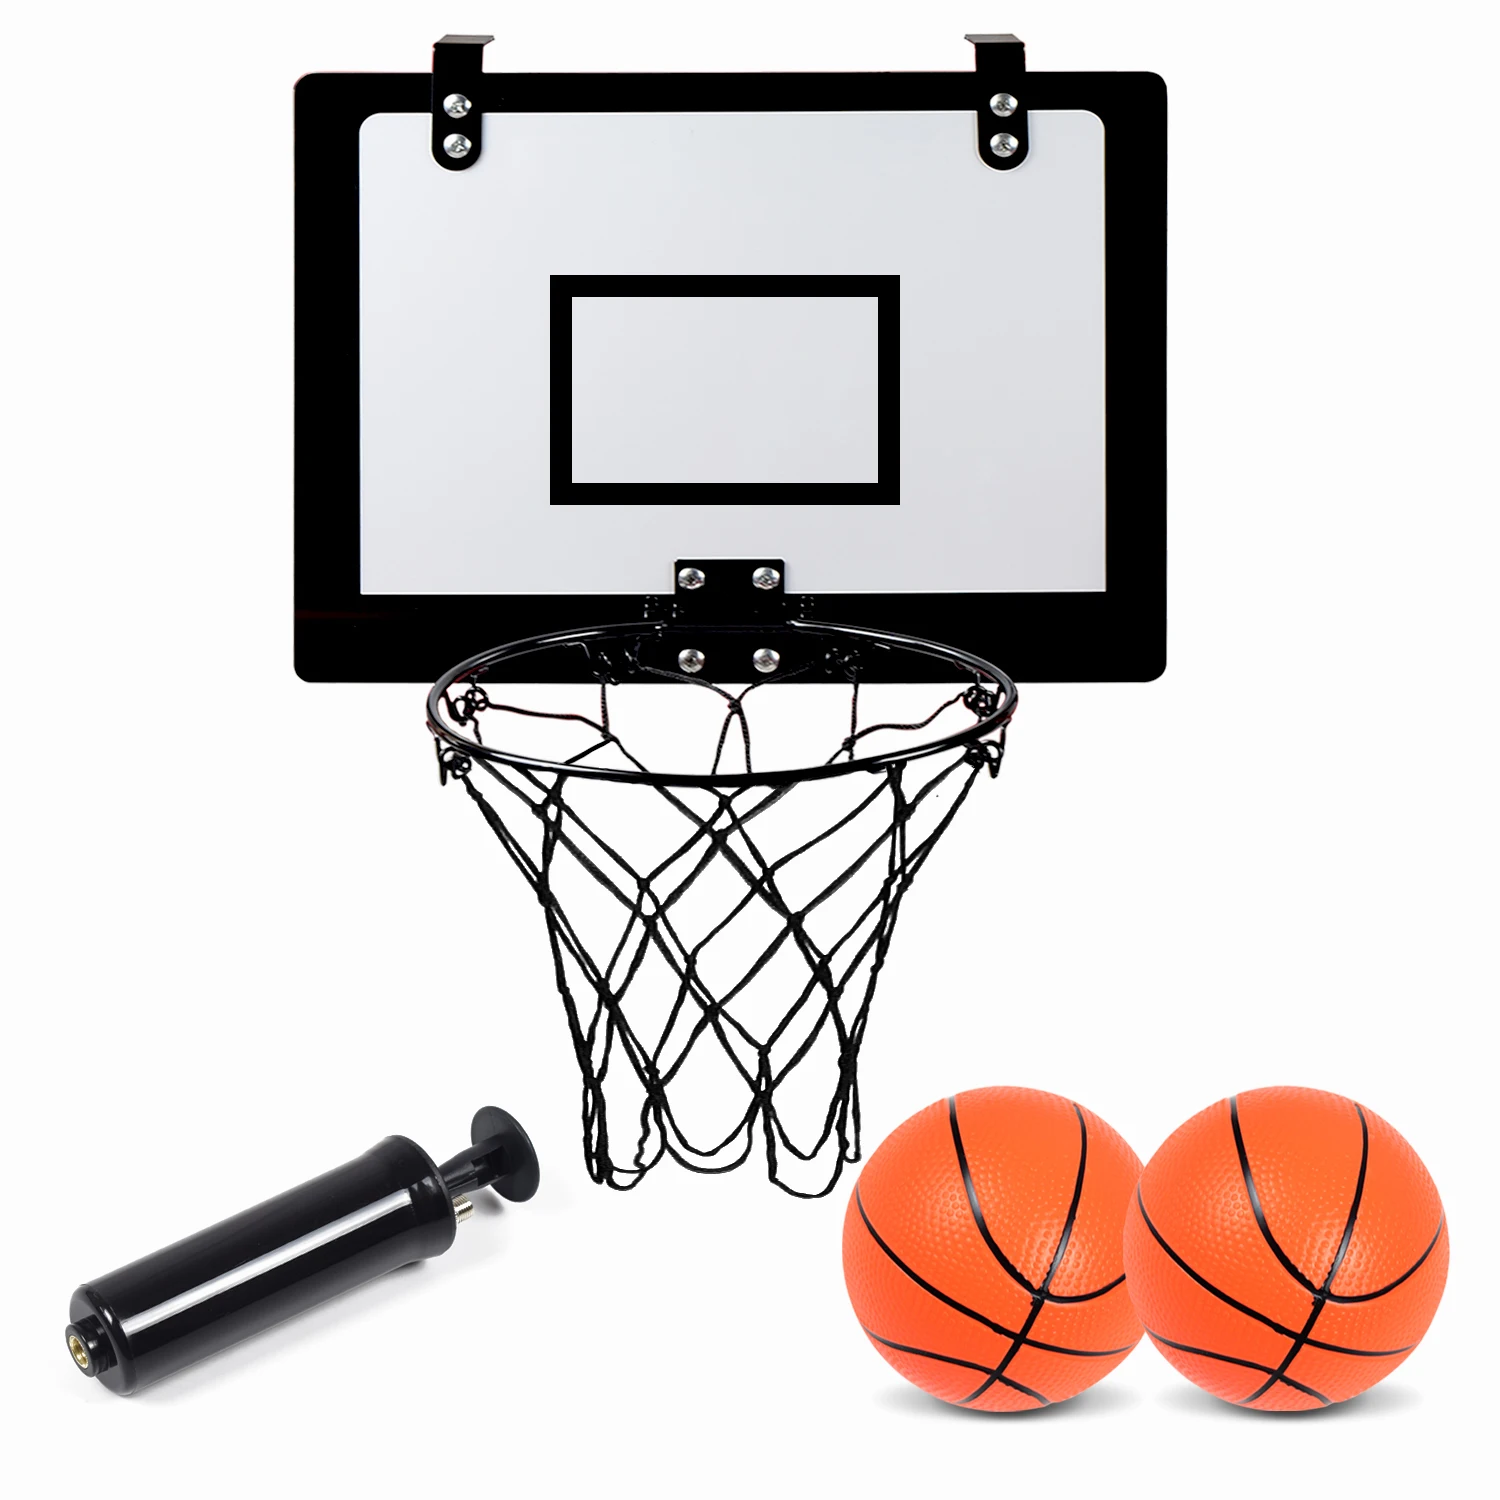 Benutzerdefiniertes Logo an der Wand montiertes Basketballkorb-Übungsspielzeug für Kinder im Innenbereich, faltbares Basketballkorbbrett mit Ring